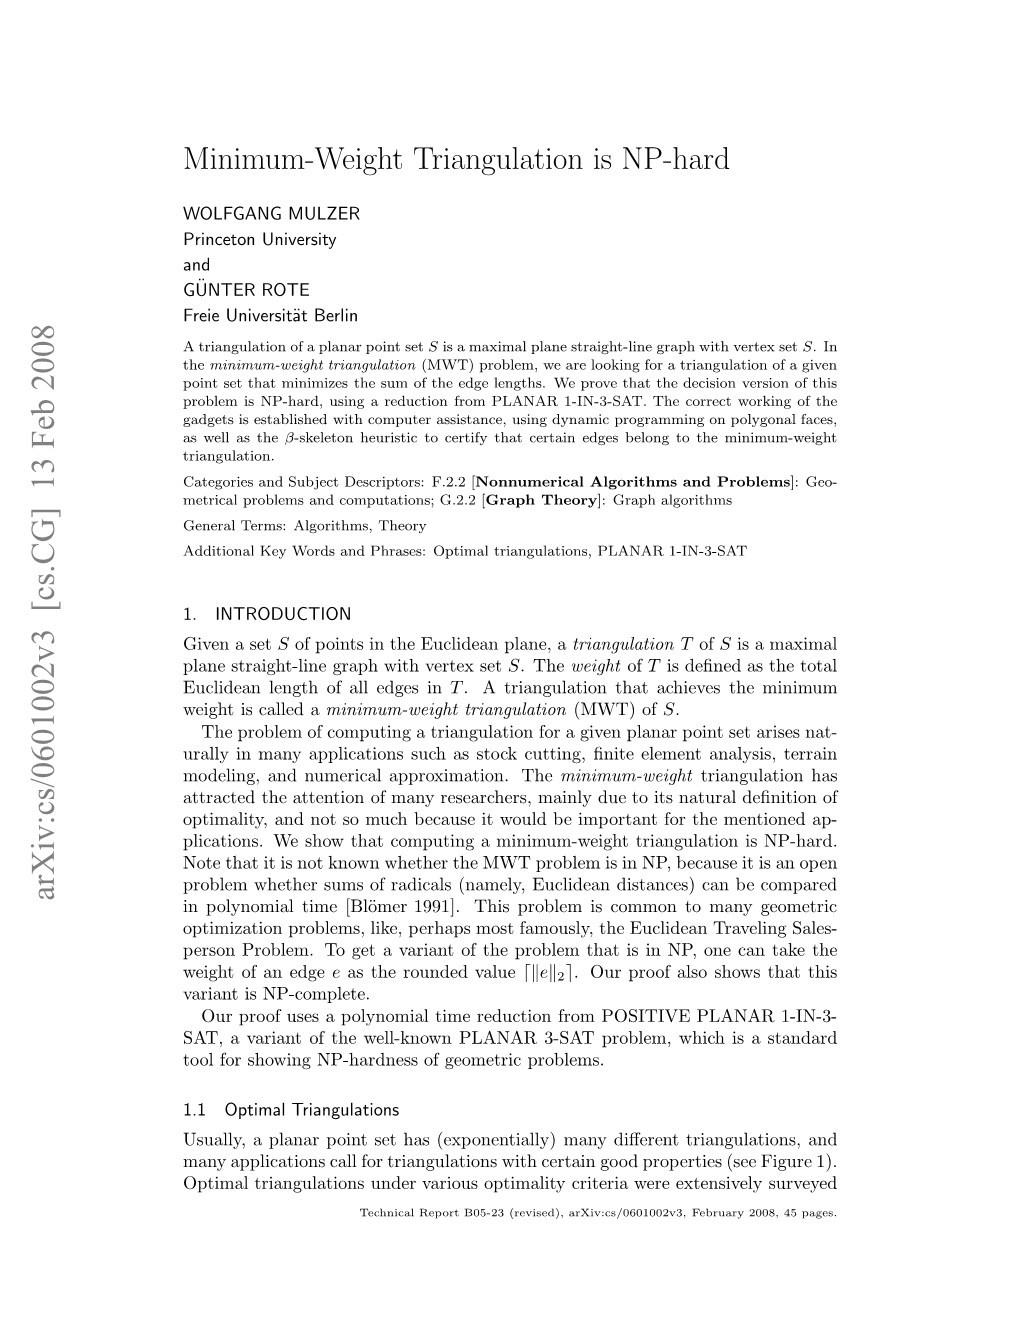 Minimum-Weight Triangulation Is NP-Hard